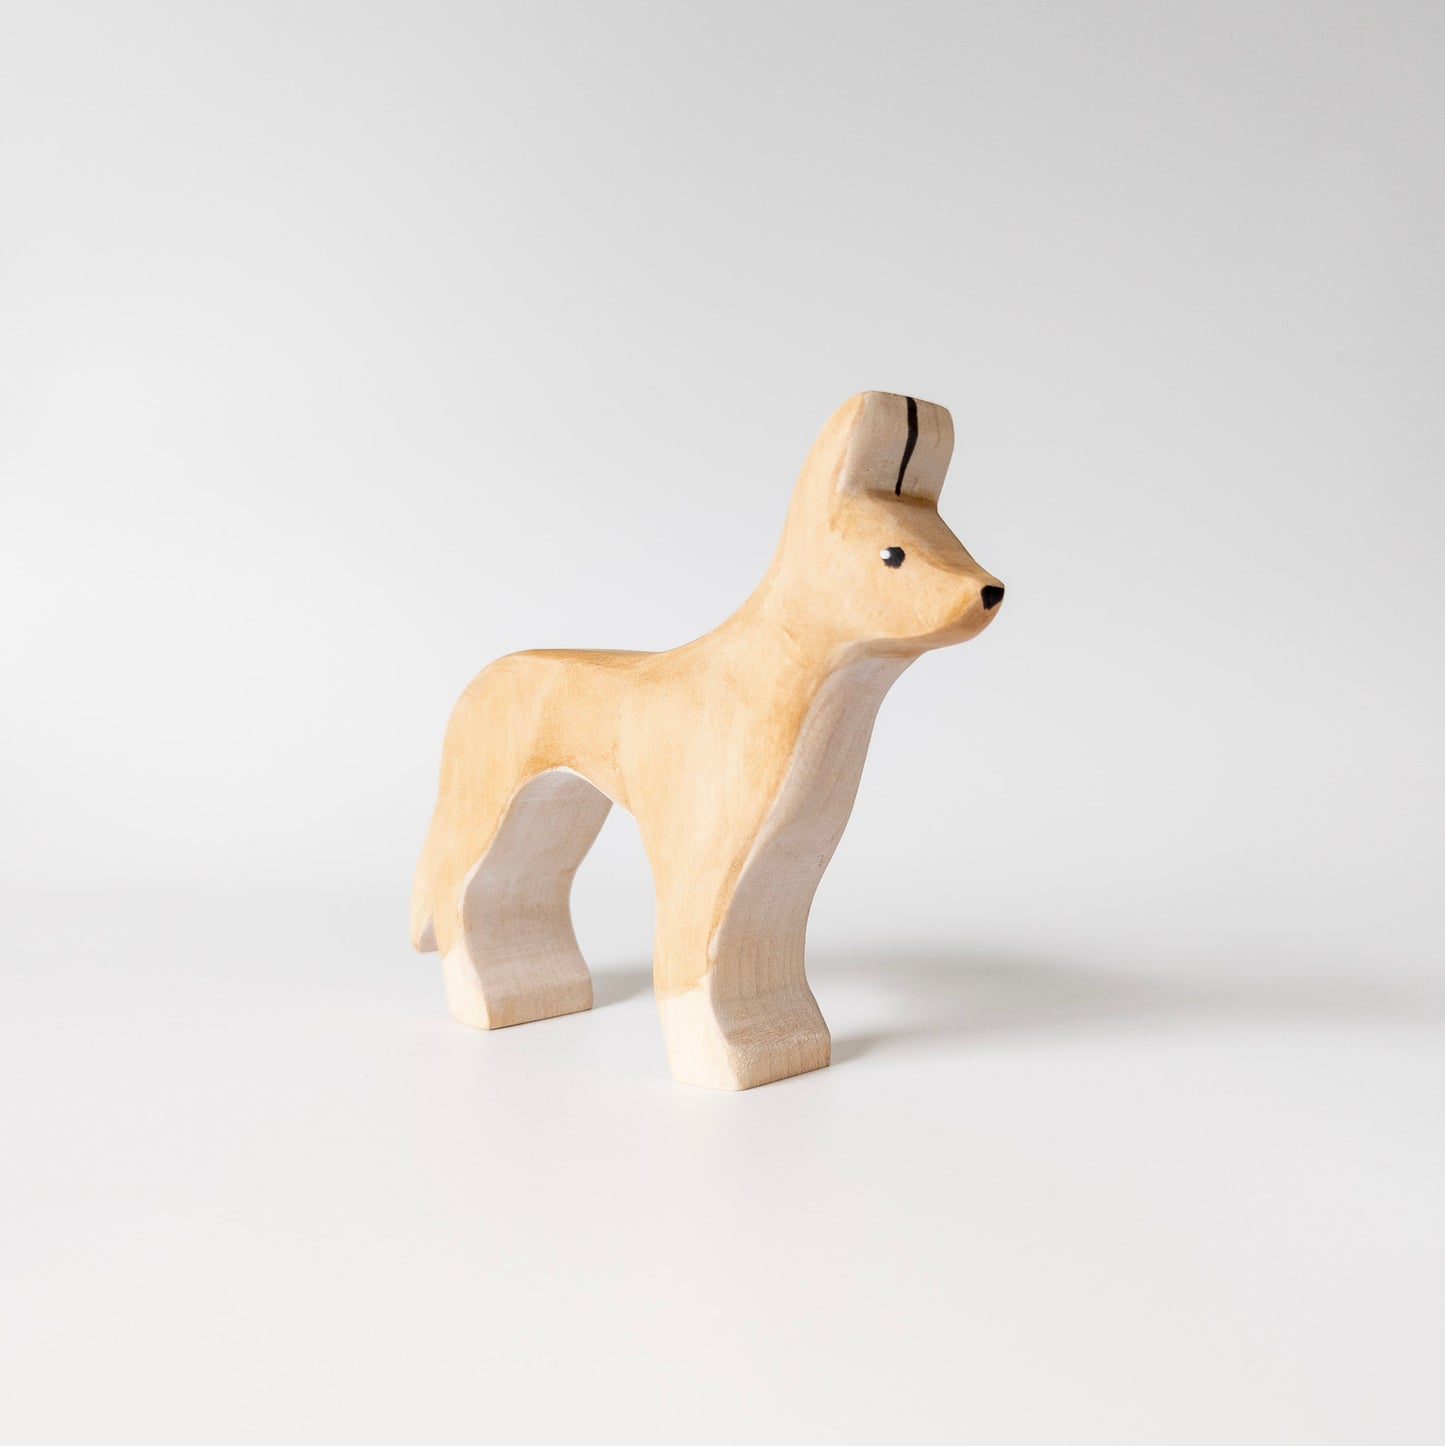 Dingo Wooden Toy